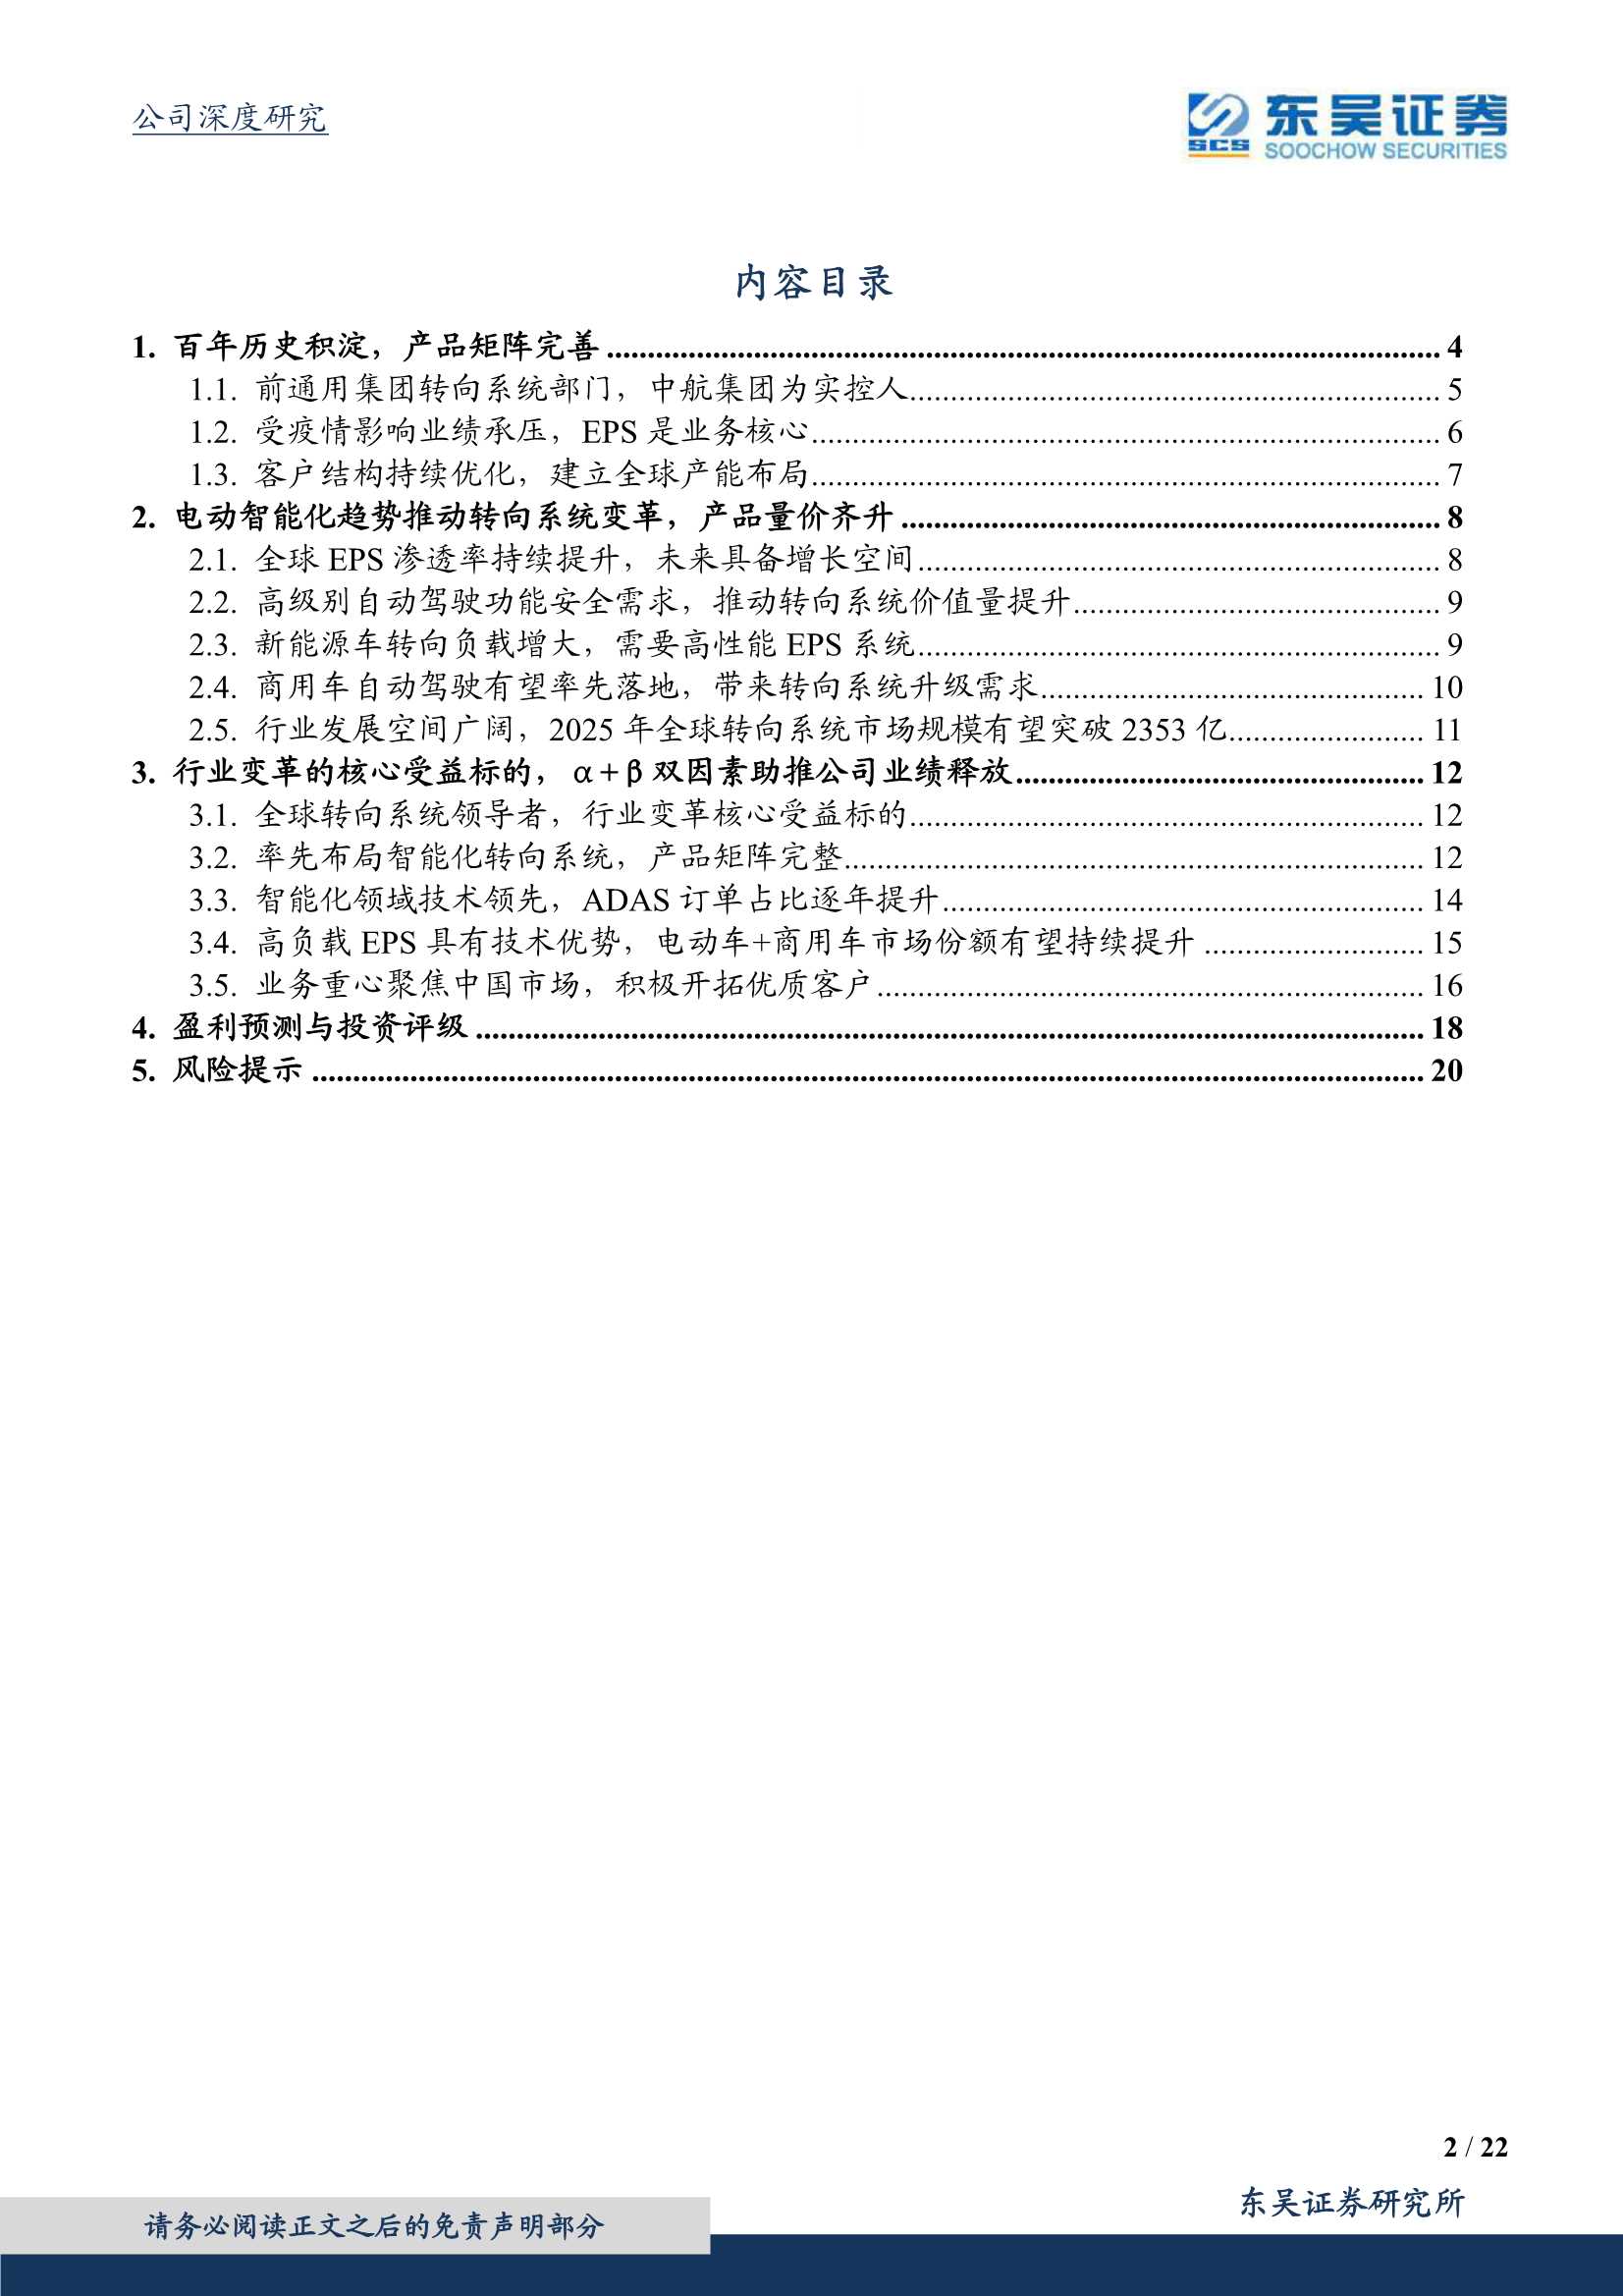 东吴证券-耐世特-1316.HK-转向系统变革核心受益标的-20220105-22页